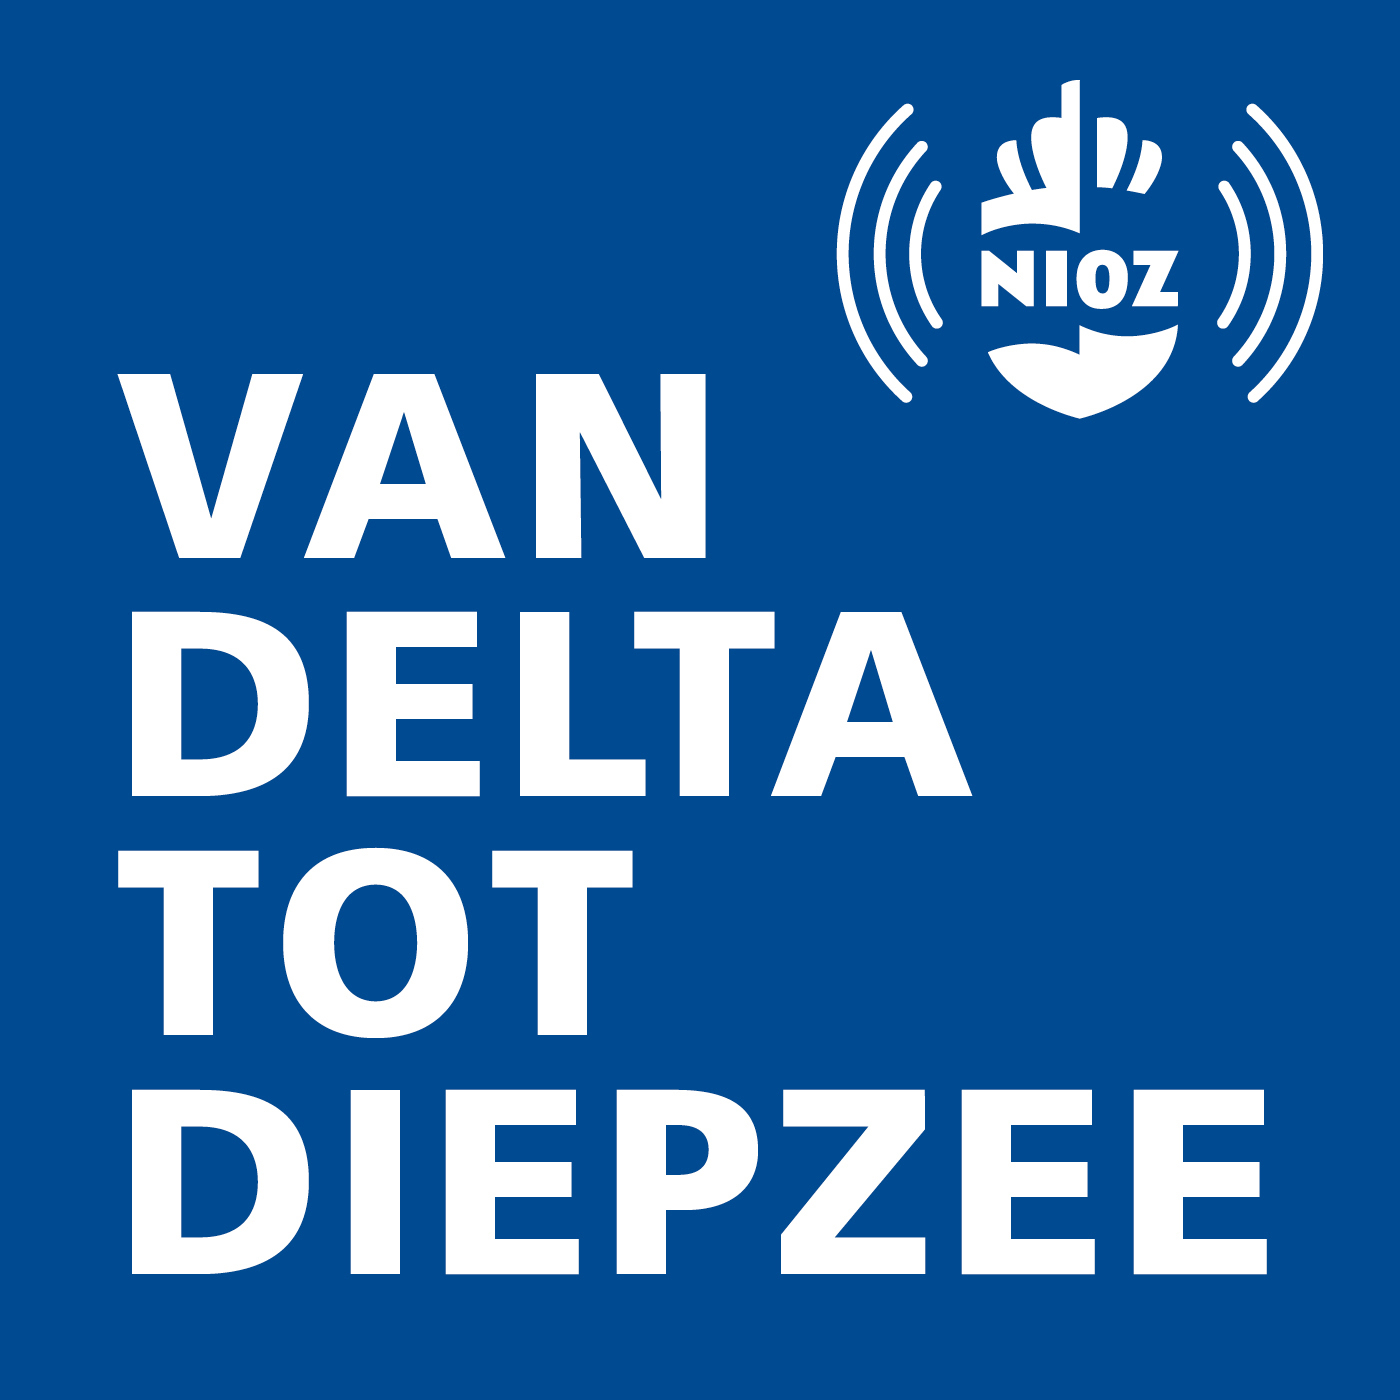 NIOZ-podcast 8 april 2021: 'De diepzee als mijn' met marien geoloog Prof. Dr. Gert-Jan Reichart 